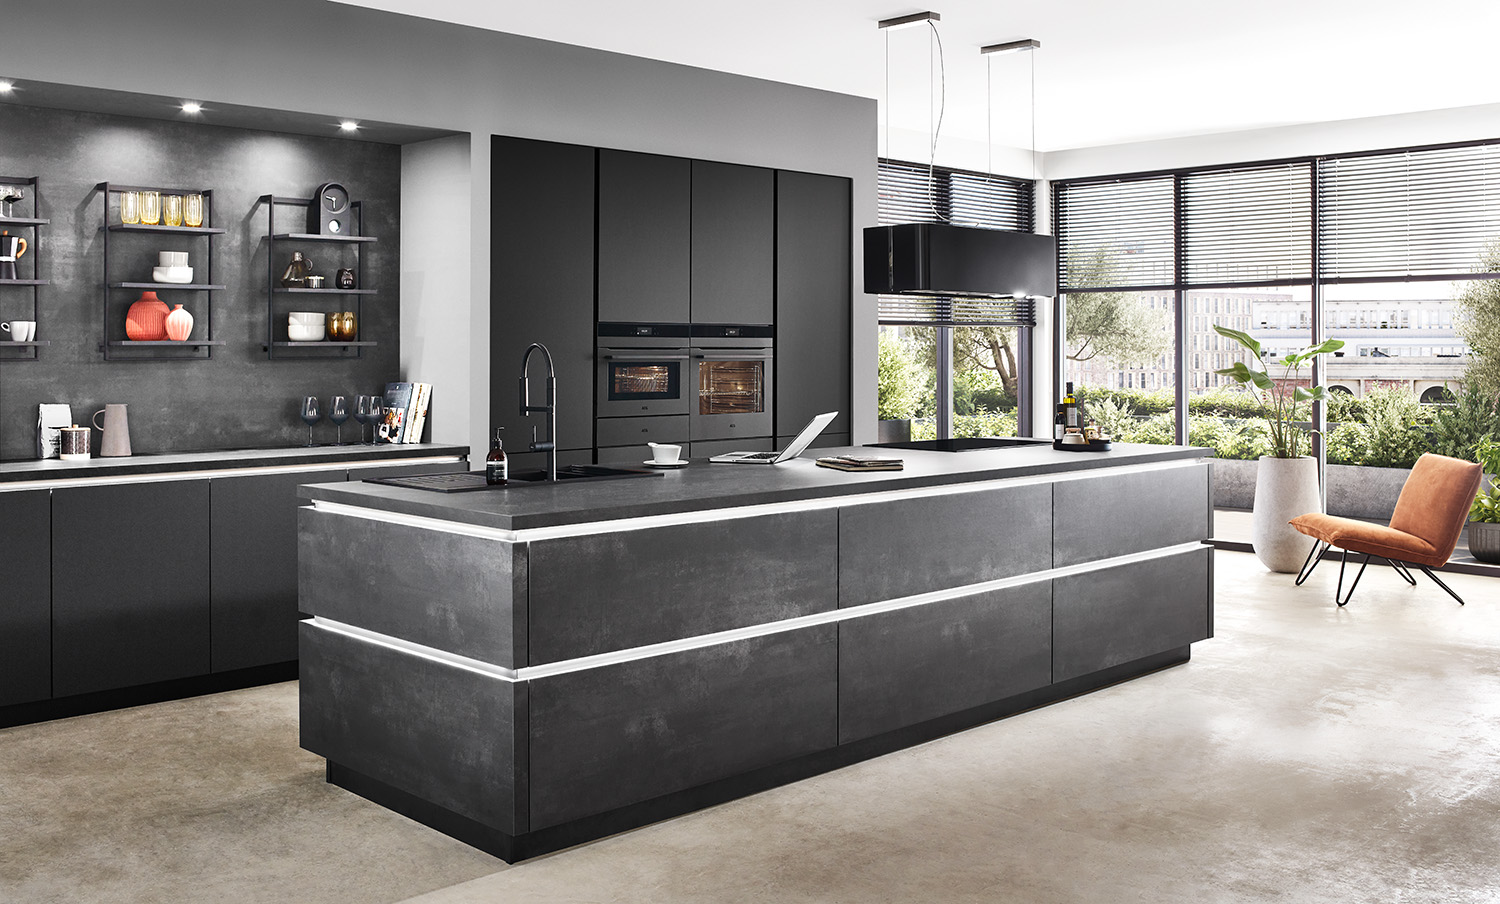 Interior de cocina moderna con elegantes gabinetes oscuros, una isla, electrodomésticos de alta gama y una acogedora área de asientos que ofrece una mezcla de funcionalidad y estilo.